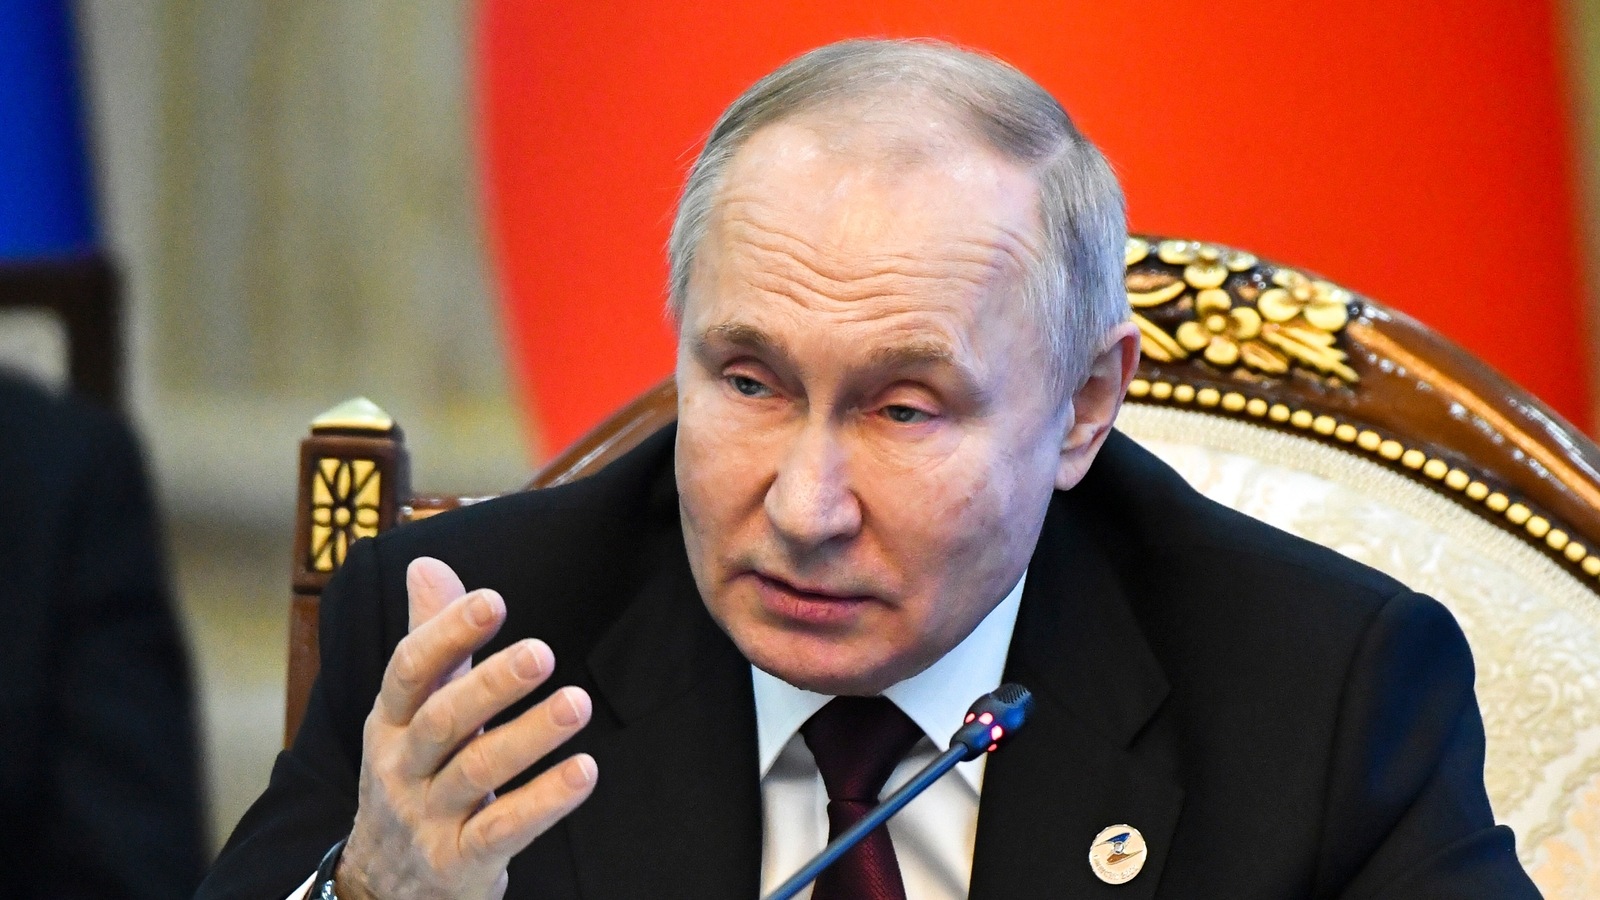 ترحب روسيا بقرار الهند عدم دعم سقف أسعار النفط الروسي لمجموعة السبع |  اخبار العالم